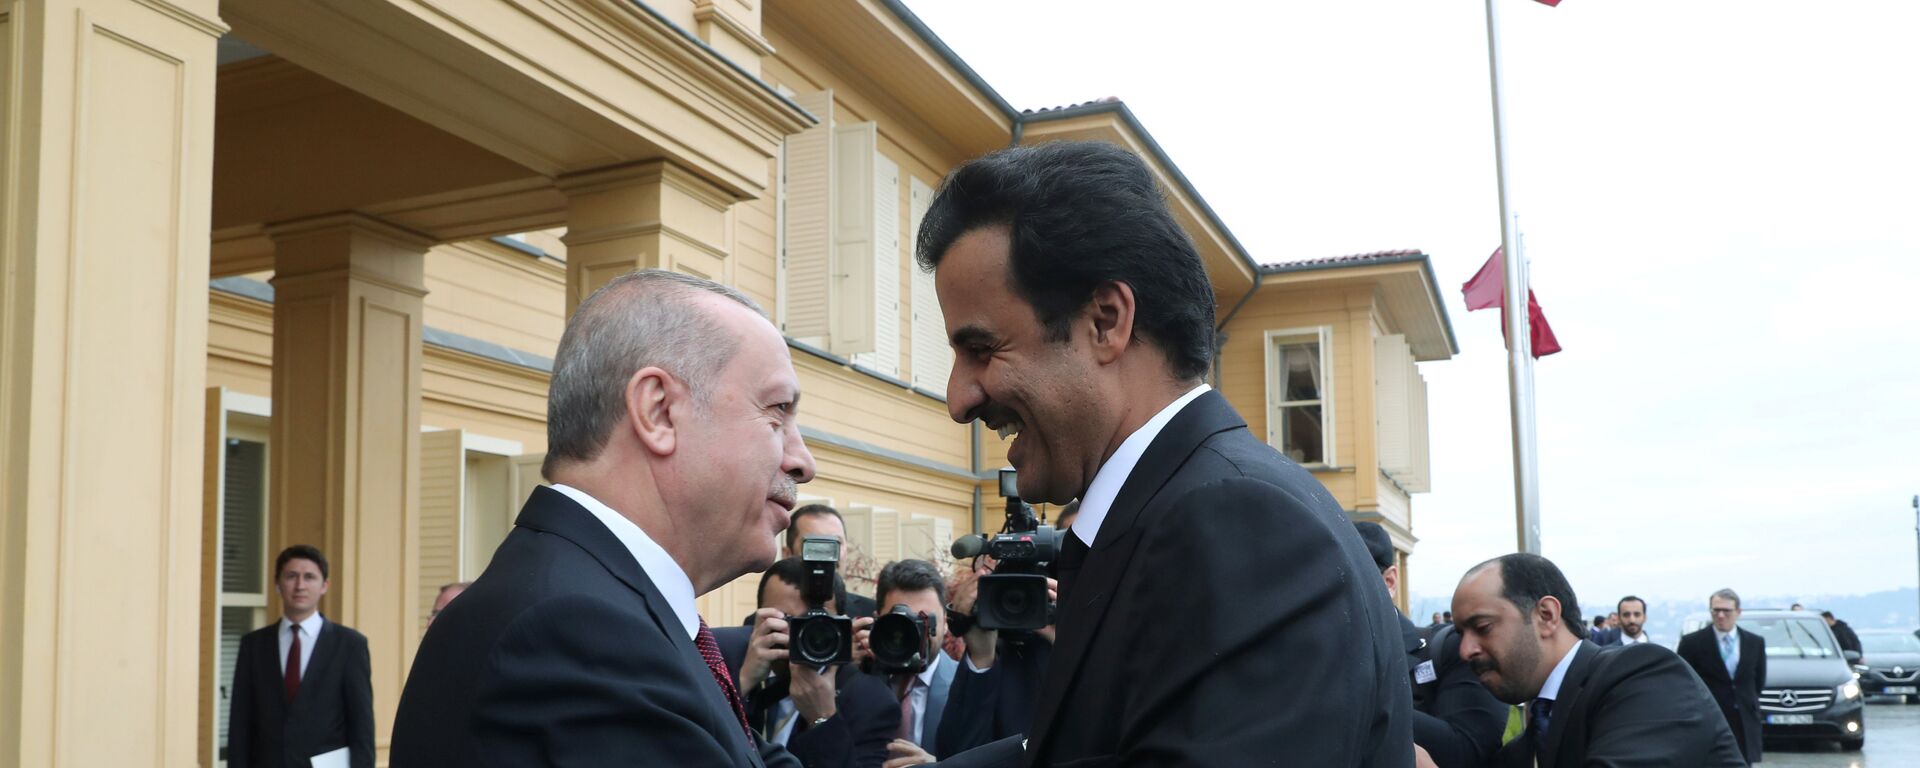 الرئيس التركي رجب طيب أردوغان يستقبل أمير قطر الشيخ تميم بن حمد آل ثاني لدى وصوله لاجتماع في اسطنبول، 26 نوفمبر/تشرين الثاني 2018 - سبوتنيك عربي, 1920, 05.03.2021